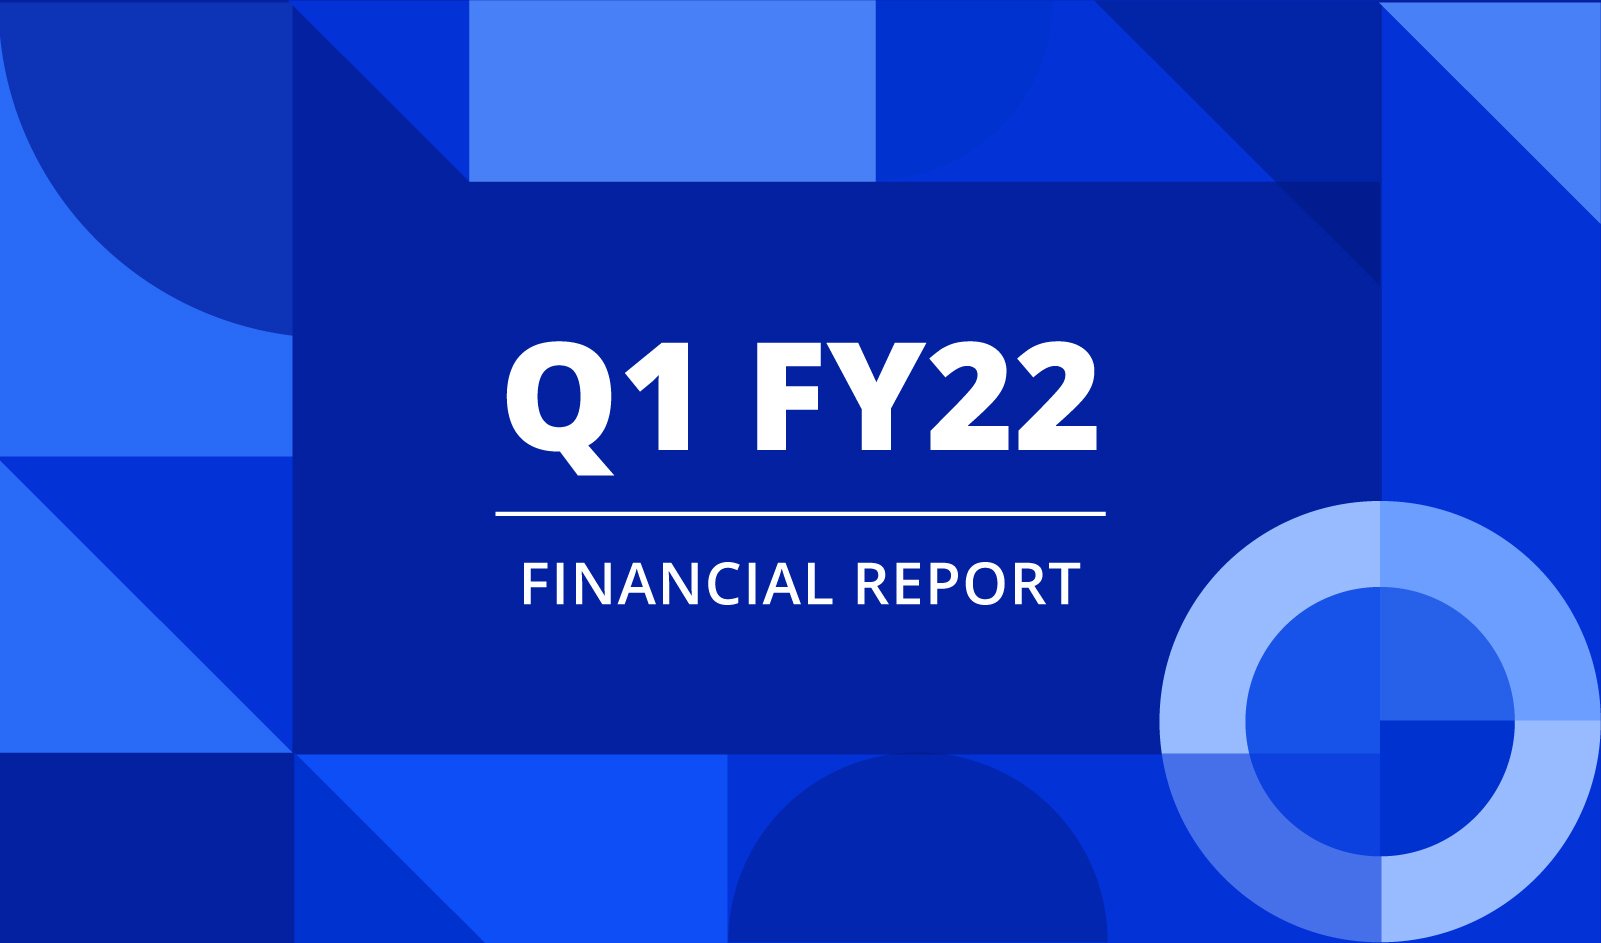 PR_Q1FY22 Financial report_Banner_v02 (1)